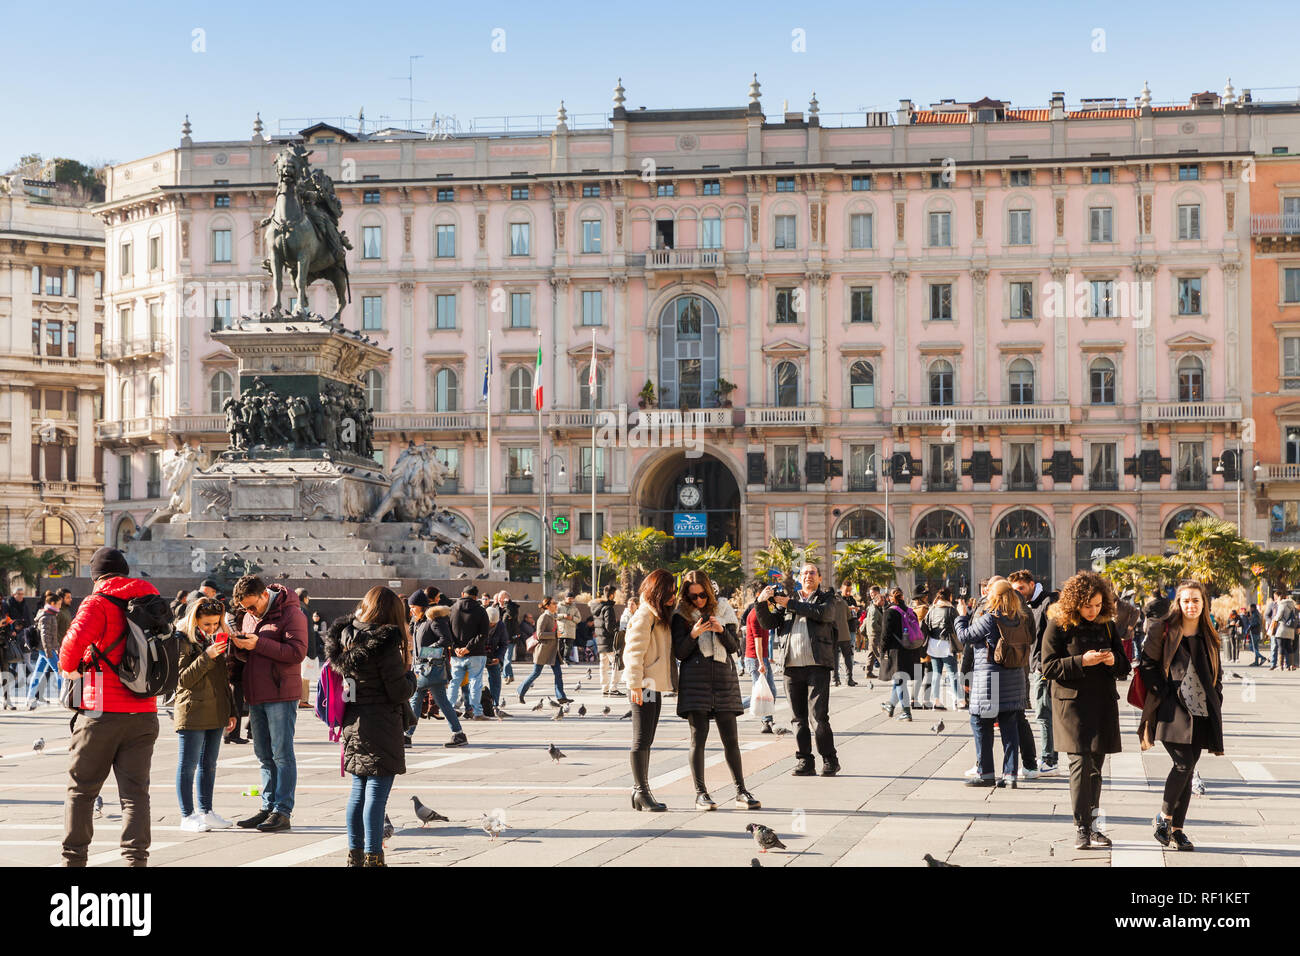 Milán, Italia - 19 de enero de 2018: Los turistas y gente de la calle a pie cerca del monumento al rey Victor Emmanuel II en Piazza del Duomo o Plaza de la Catedral. Foto de stock